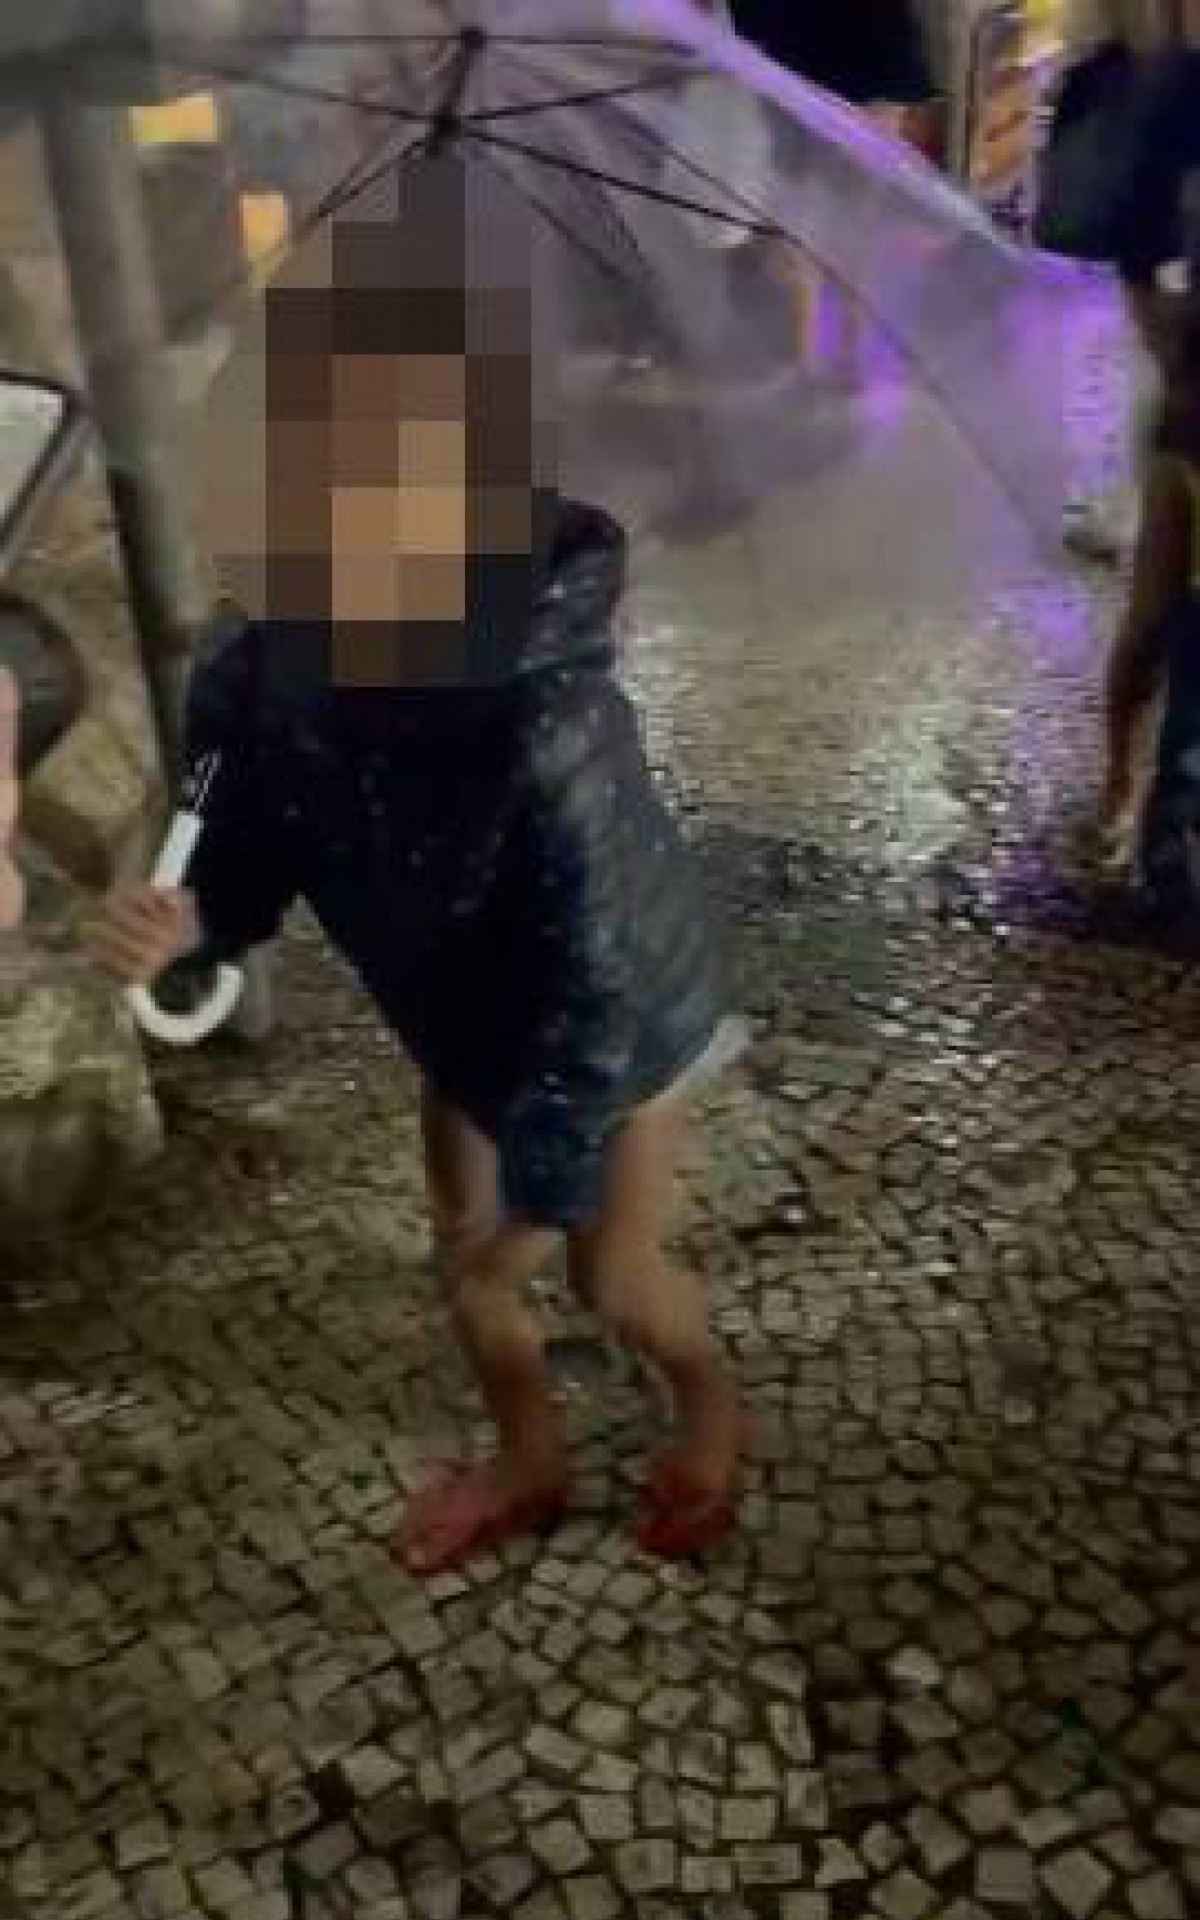 Vídeo feito por investigadores mostram crianças sendo exploradas mesmo debaixo de chuva - Divulgação